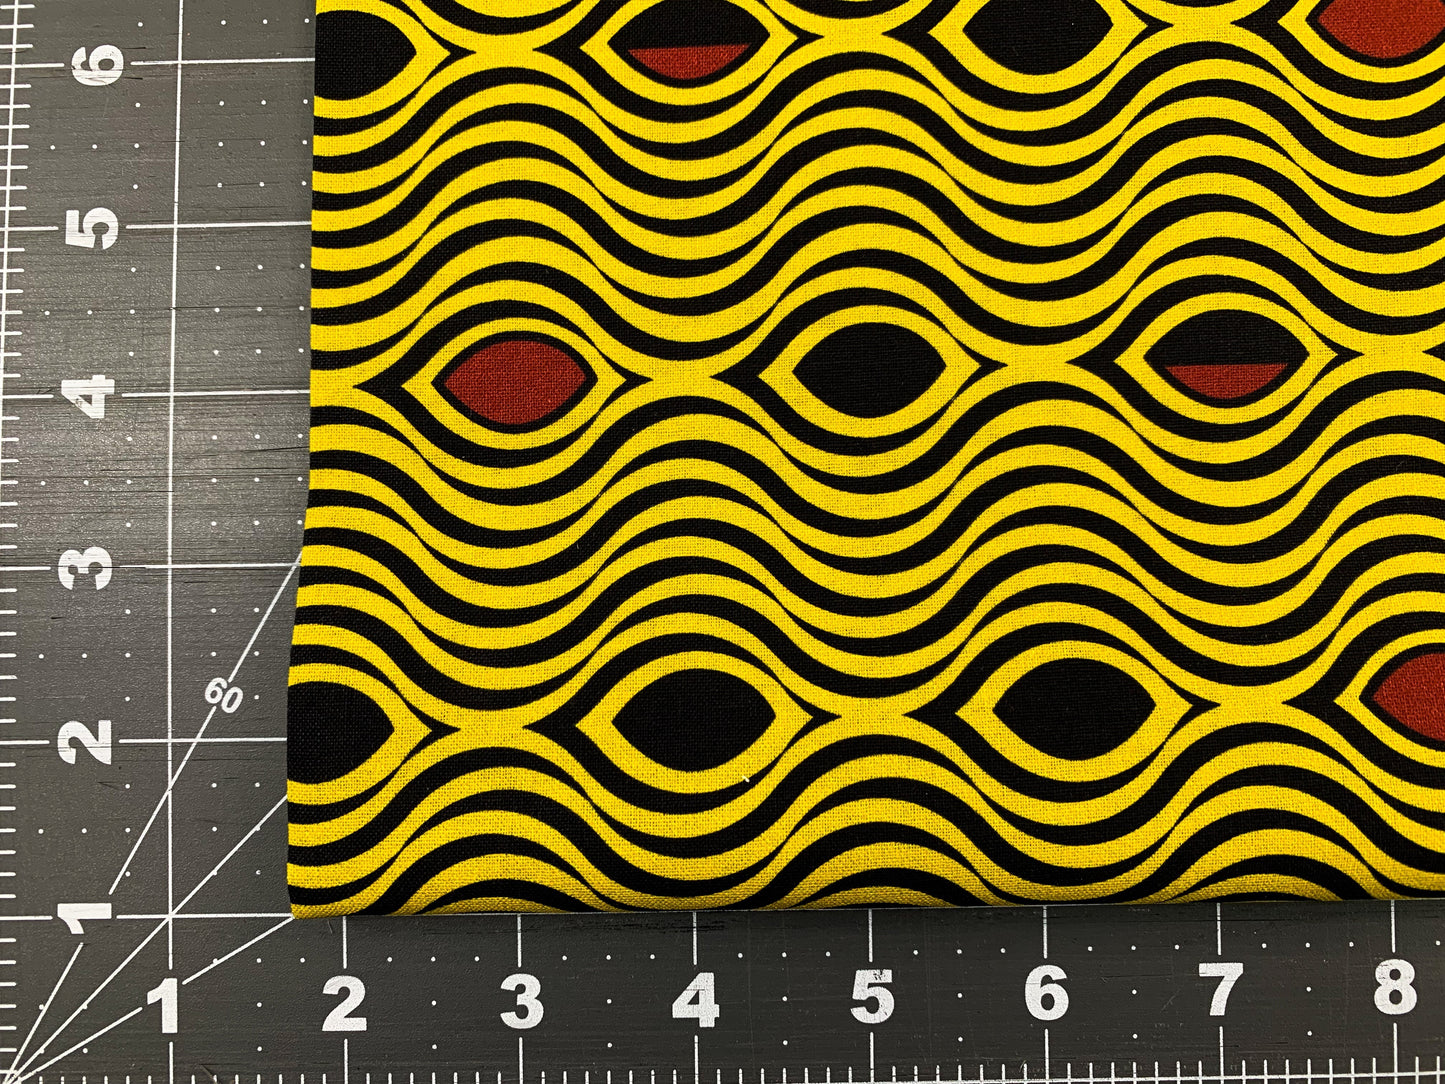 Yellow Waves African fabric 2123 Kenta wave pattern